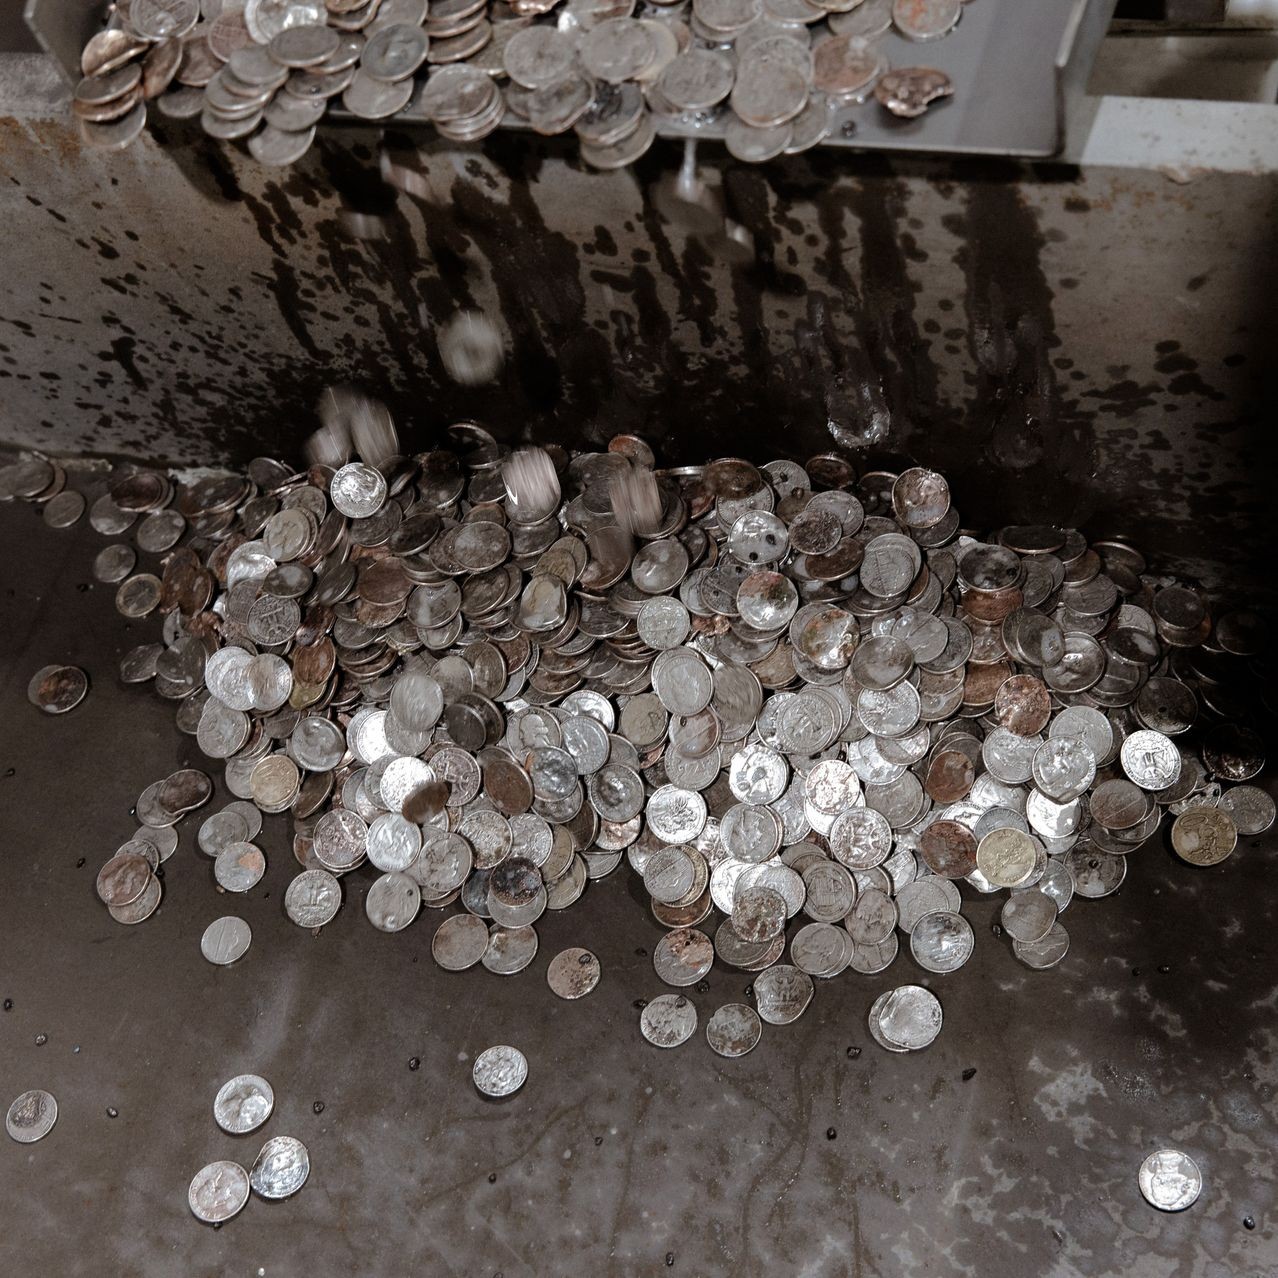 Người Mỹ vứt 68 triệu USD vào bãi rác mỗi năm: Chuyện nghề ‘đào vàng’ từ những đồng tiền bị lãng quên, chính phủ tốn 707 triệu USD để sản xuất nhưng bị coi là vô dụng- Ảnh 4.